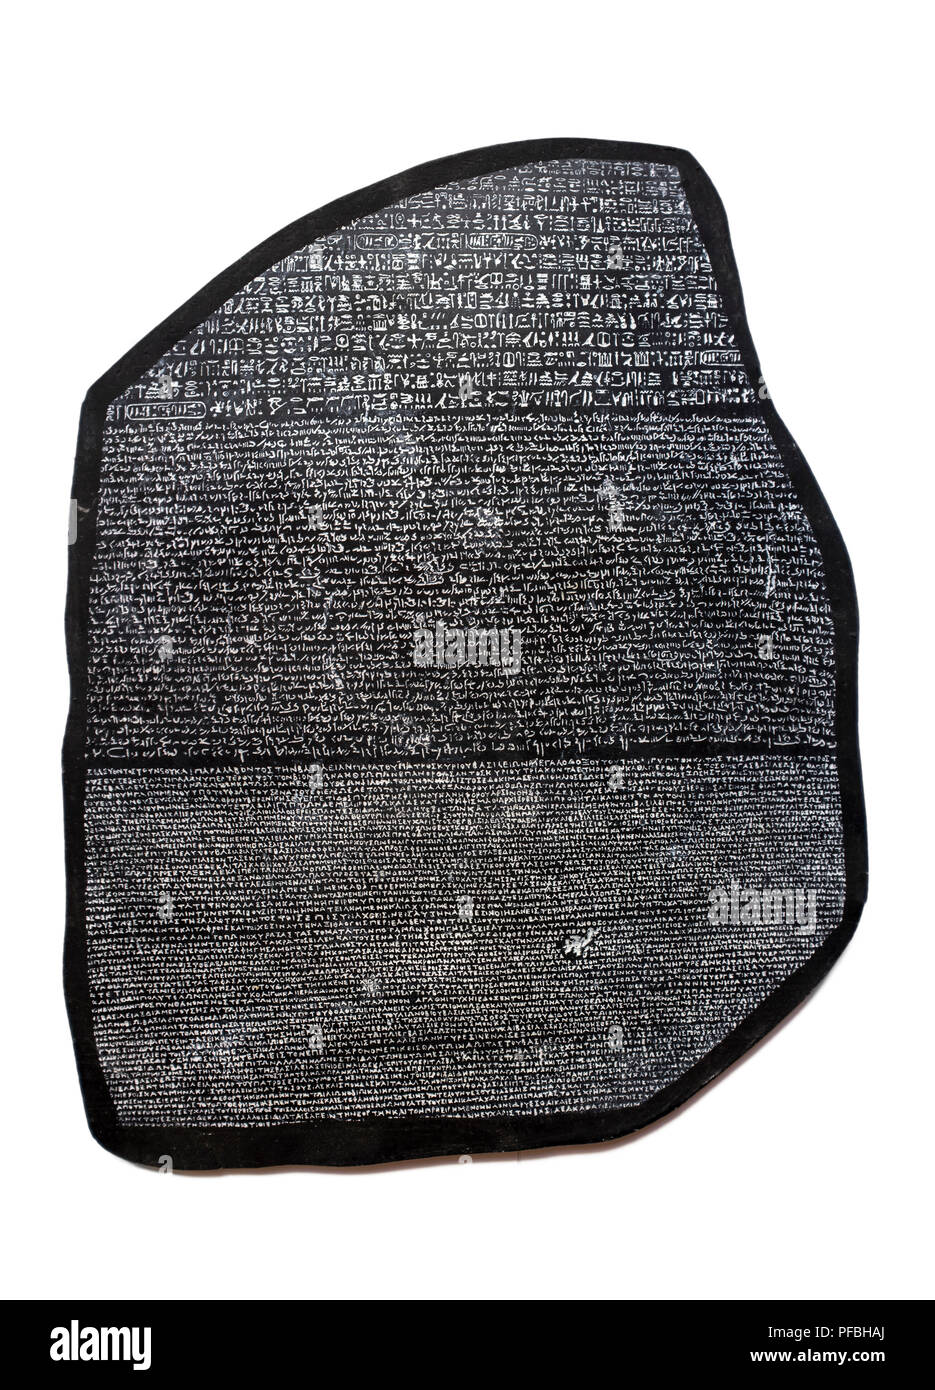 Die Vervielfältigung von Rosetta Stone, der Schlüssel für die Entzifferung der ägyptischen Hieroglyphen. Über einem weißen Hintergrund isoliert Stockfoto